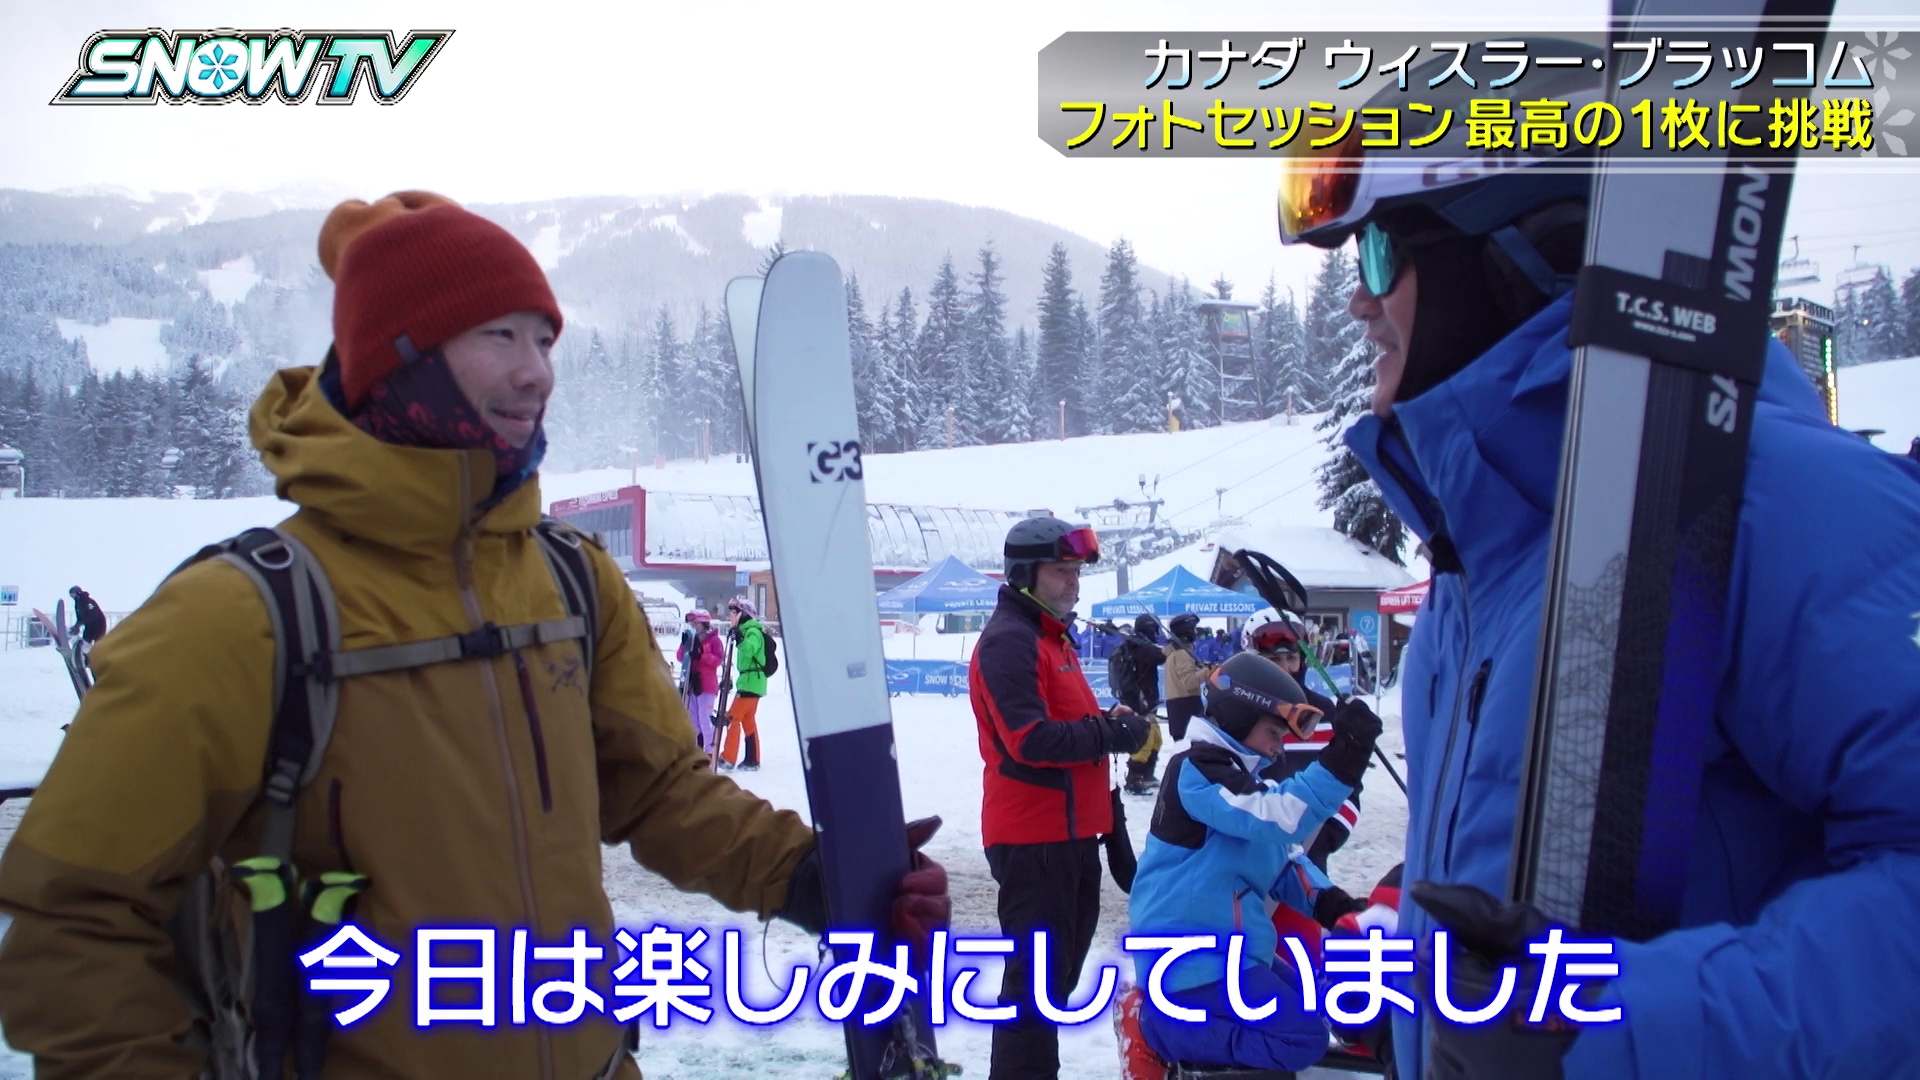 3/9 SNOWTV #2　本日放送